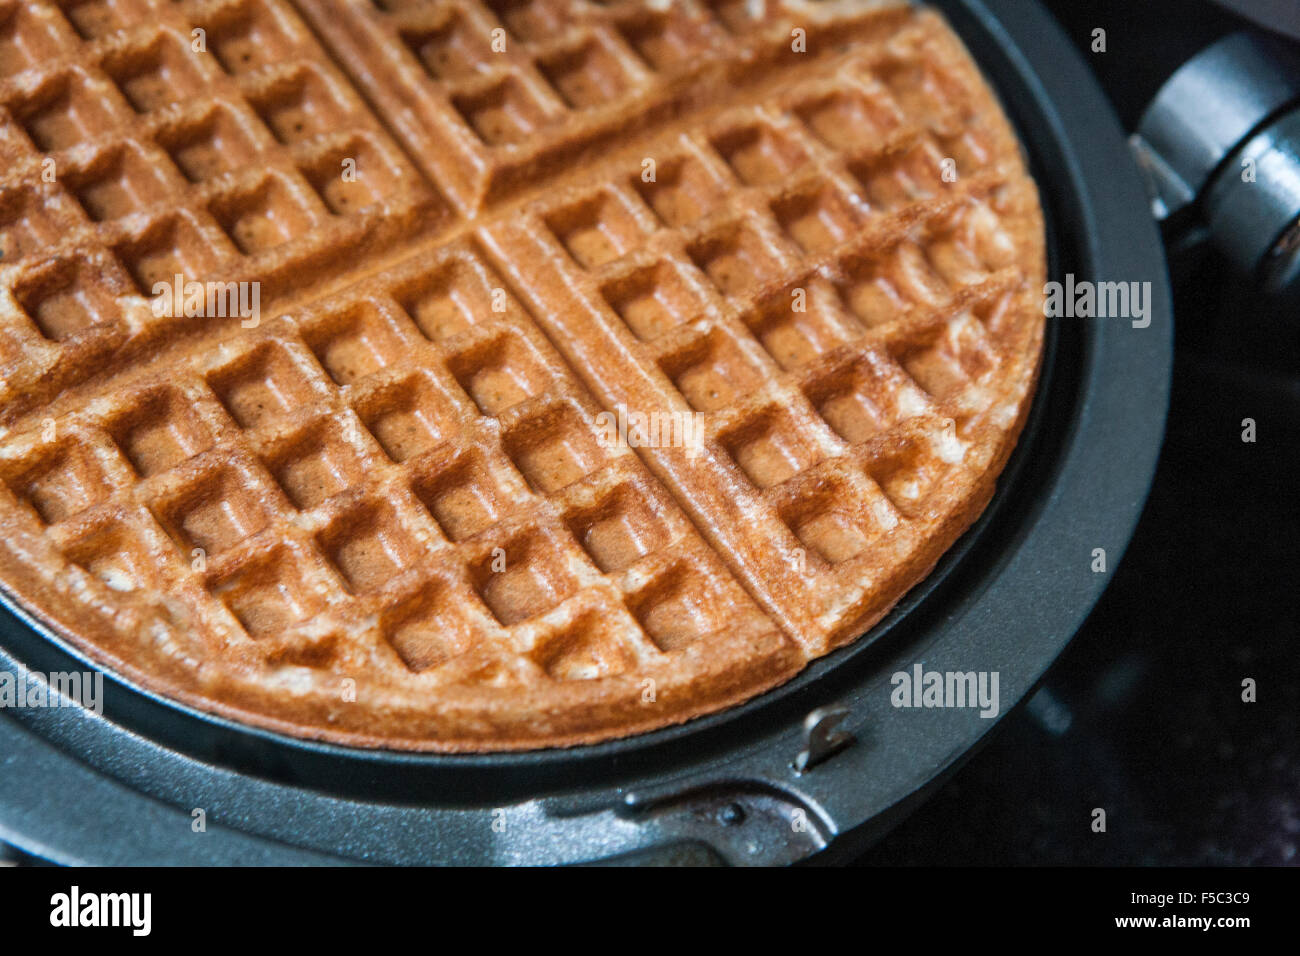 Waffle and Waffle Iron, Close-Up Stock Photo